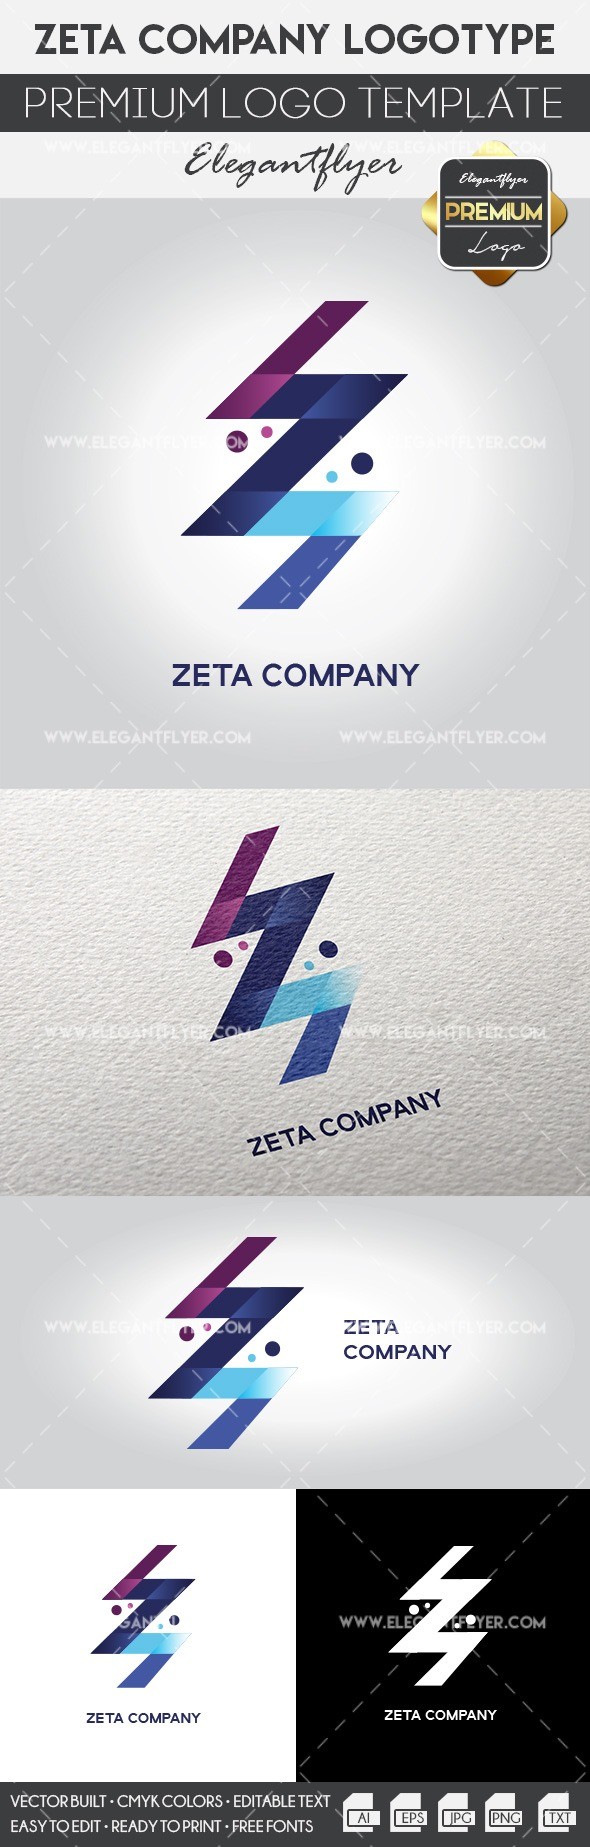 Compañía Zeta by ElegantFlyer